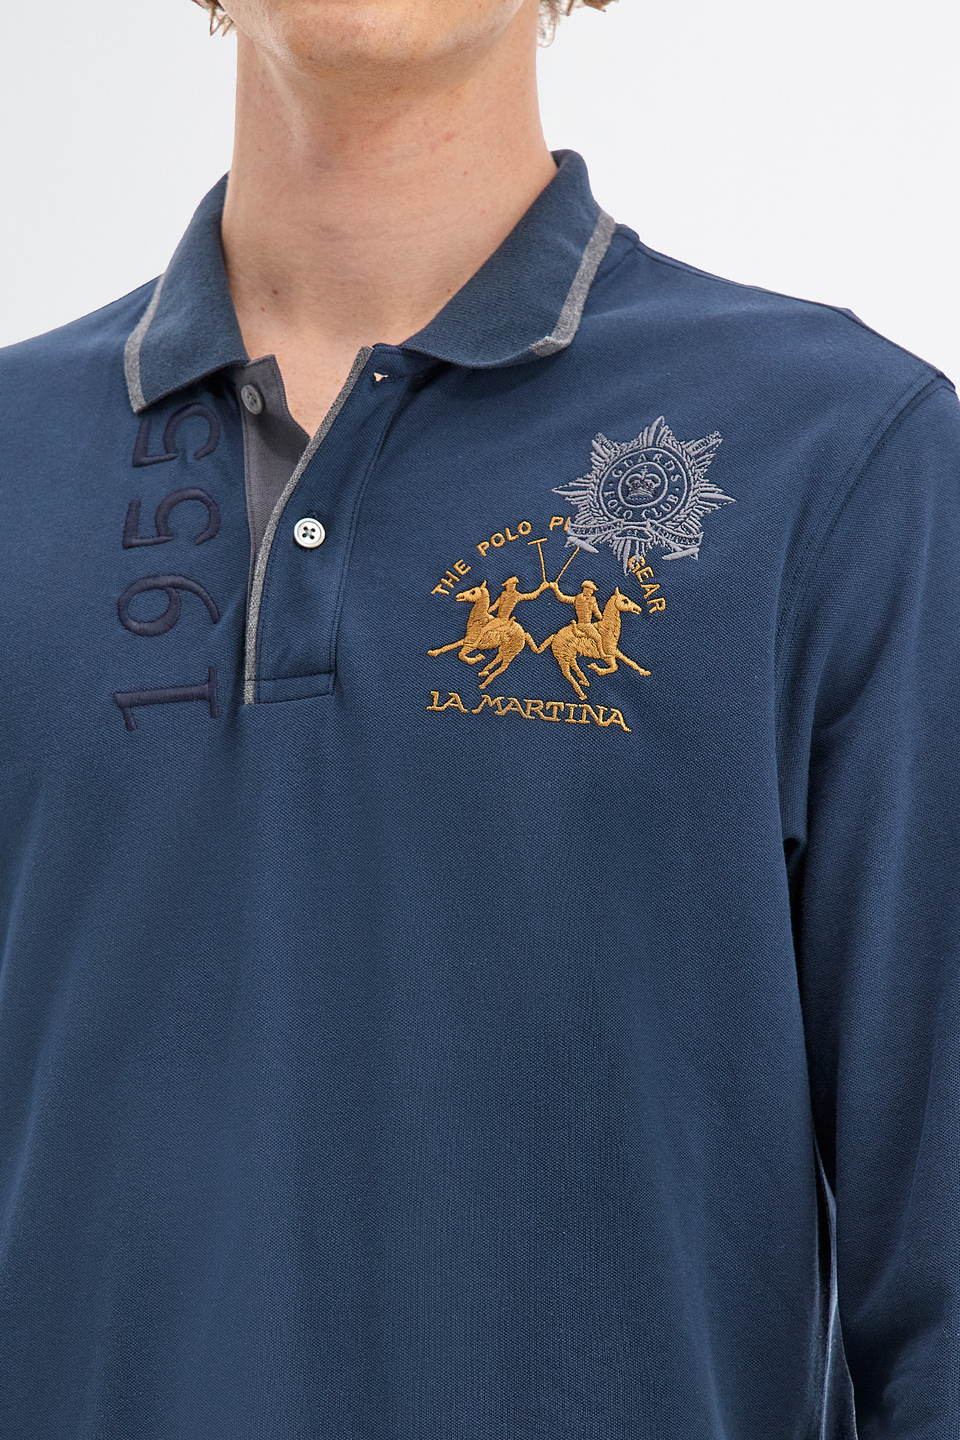 Polo Guards hommes avec manches longues en coton piqué stretch | La Martina - Official Online Shop